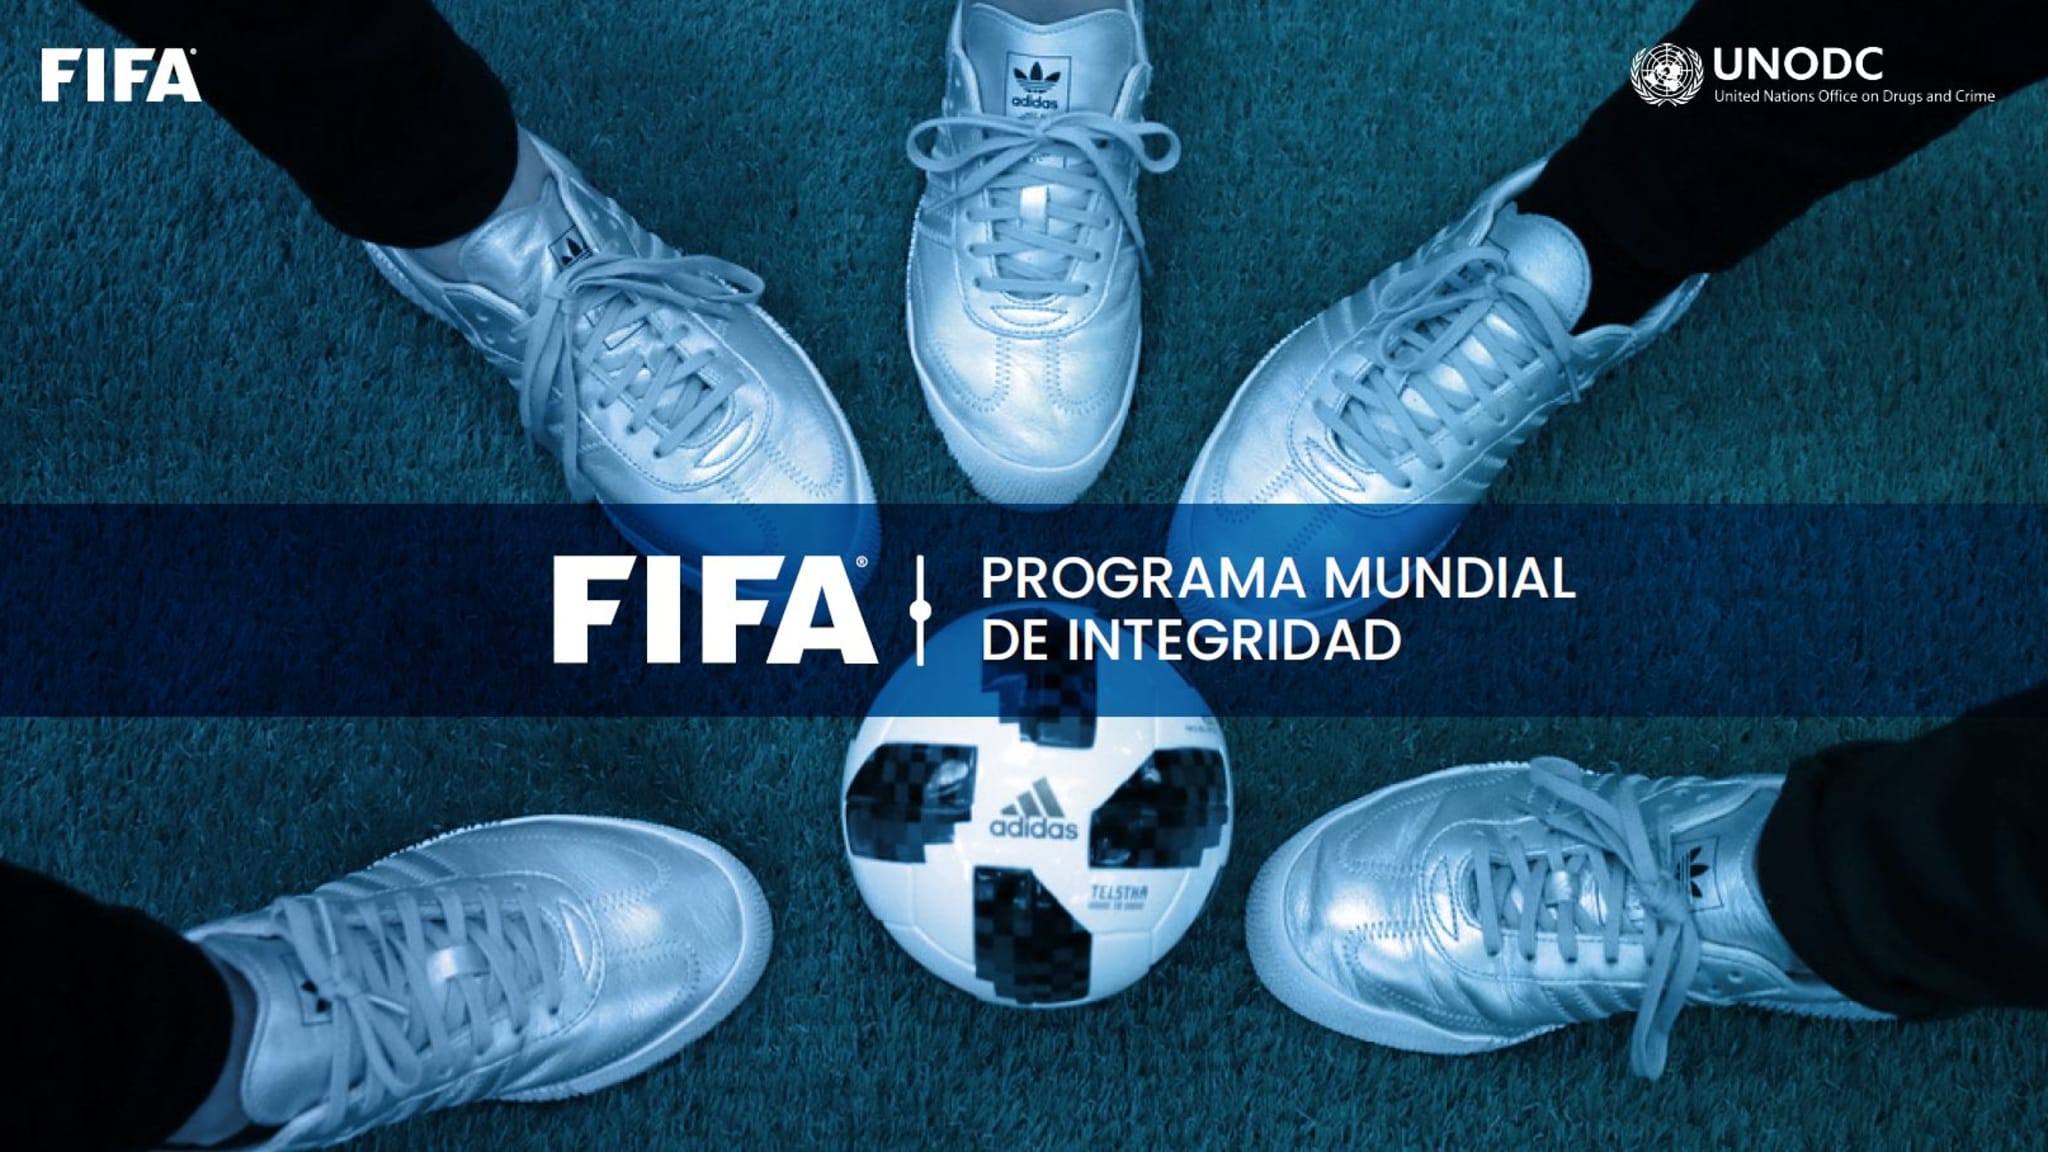 La Fifa lanza un Programa Mundial de Integridad contra manipulación de partidos